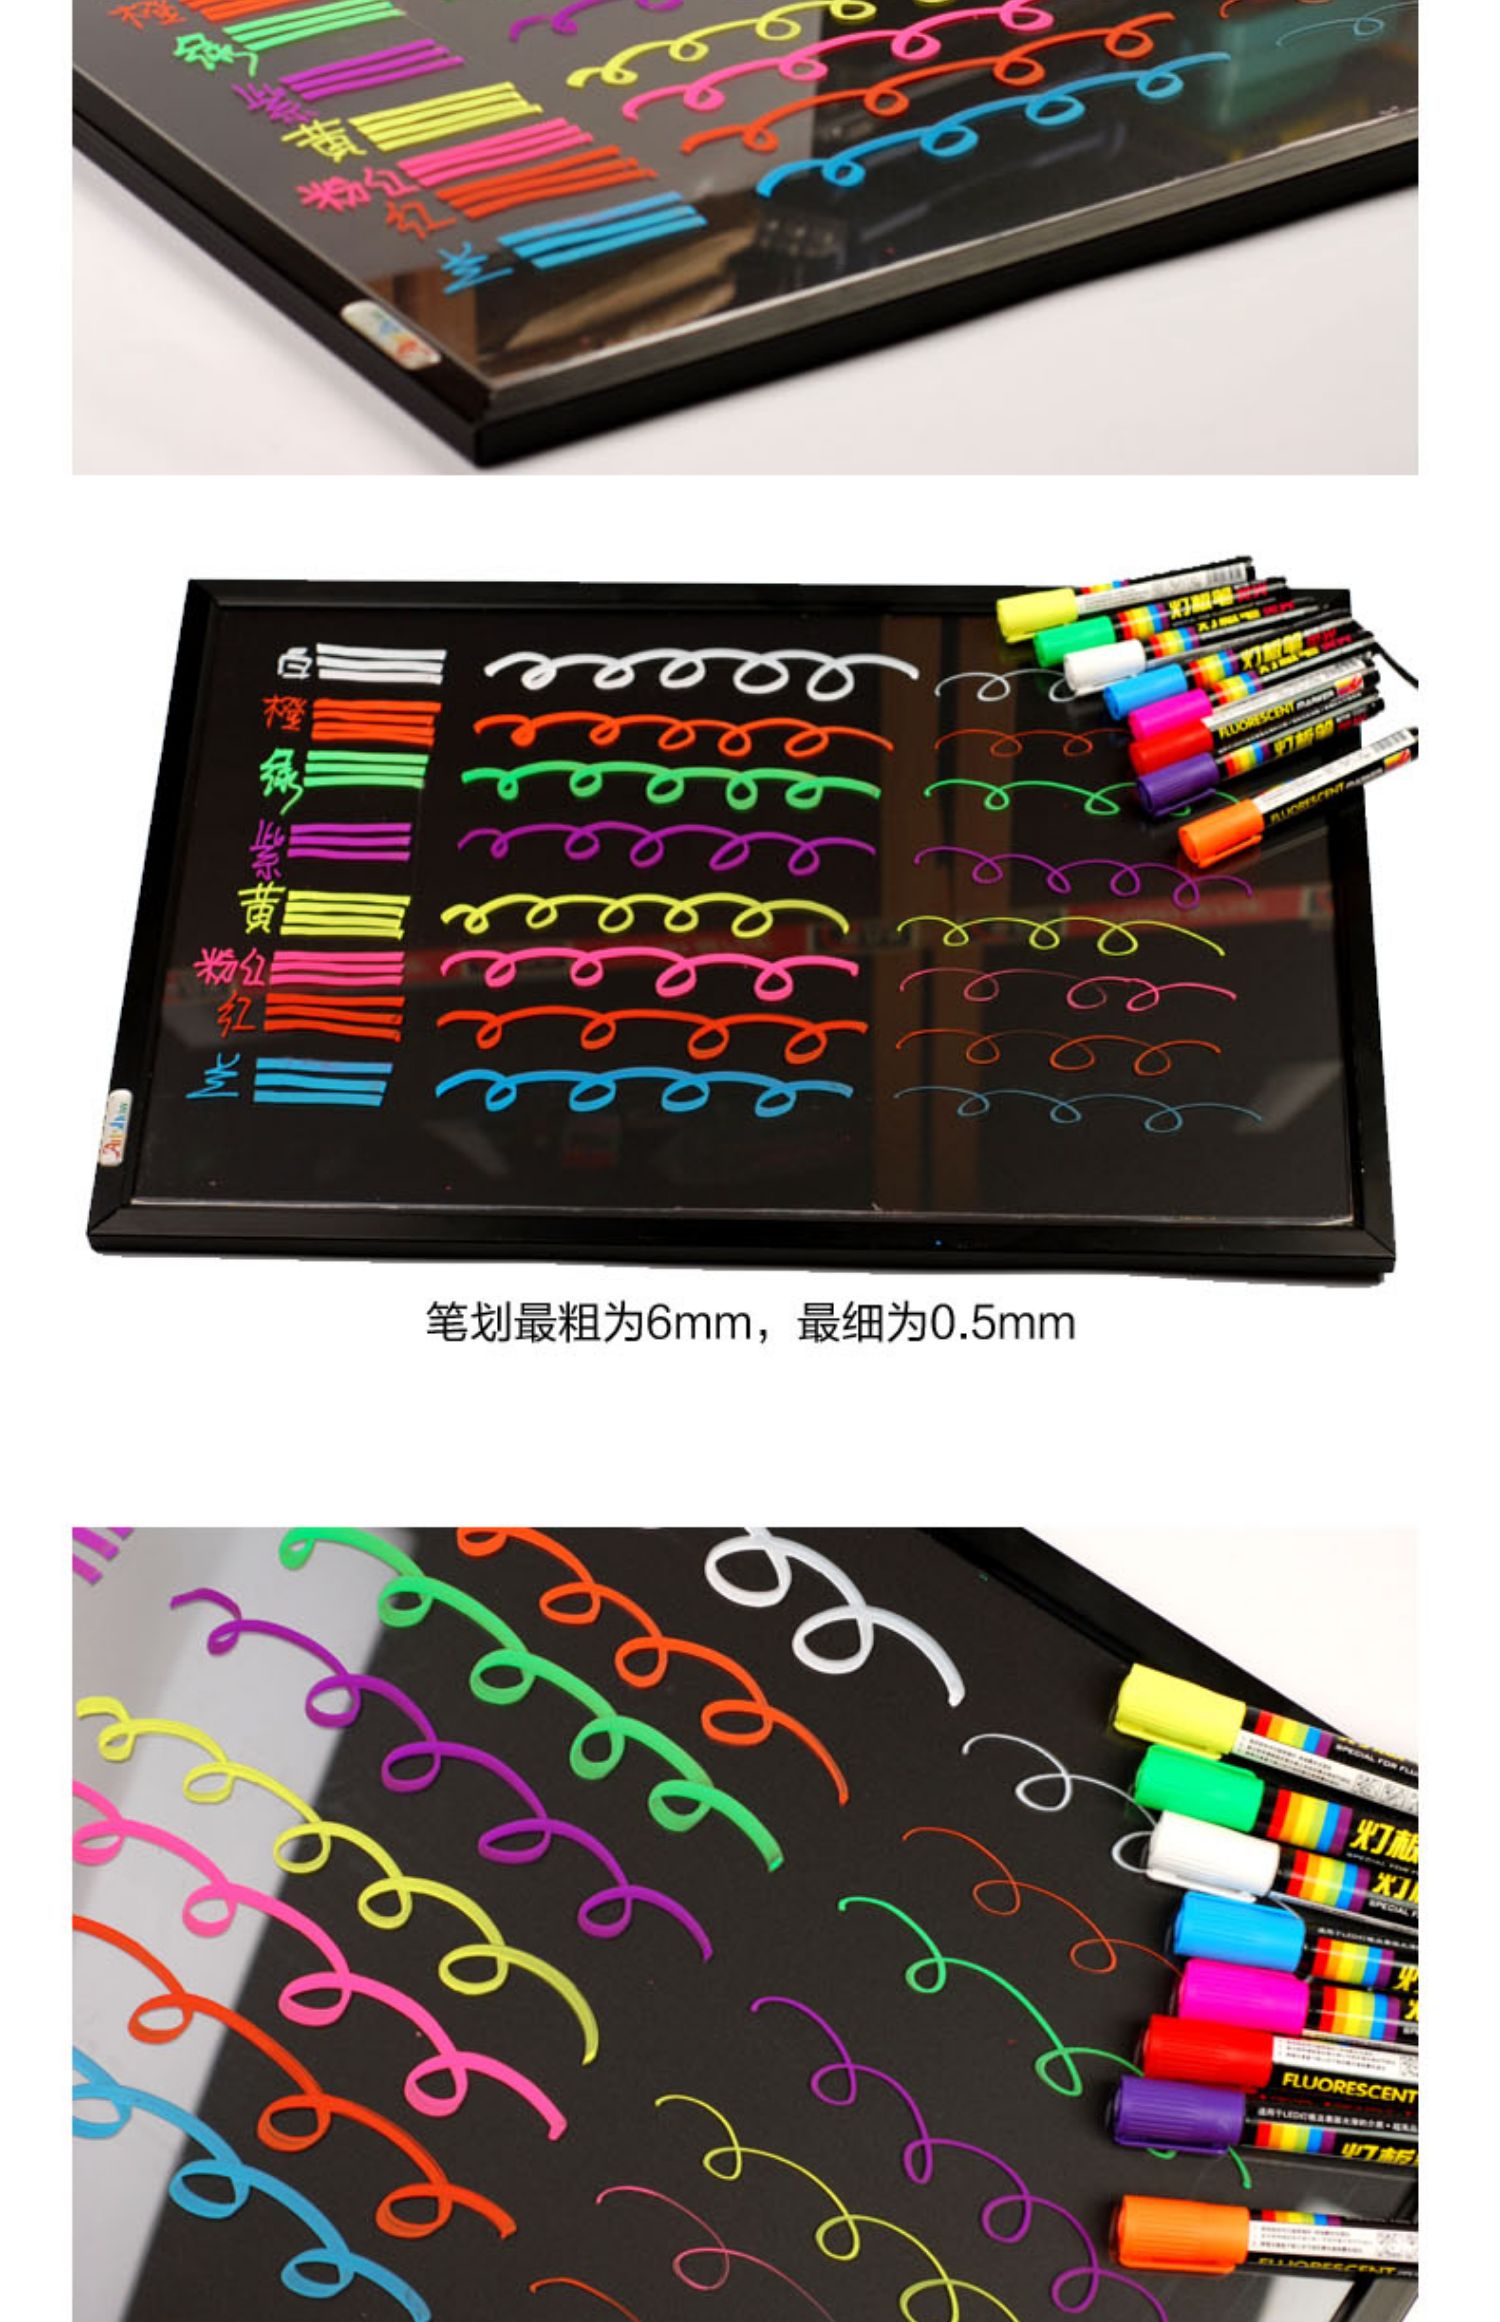 金万年G-0532灯板笔6mmLED灯板专用8色套装荧光笔